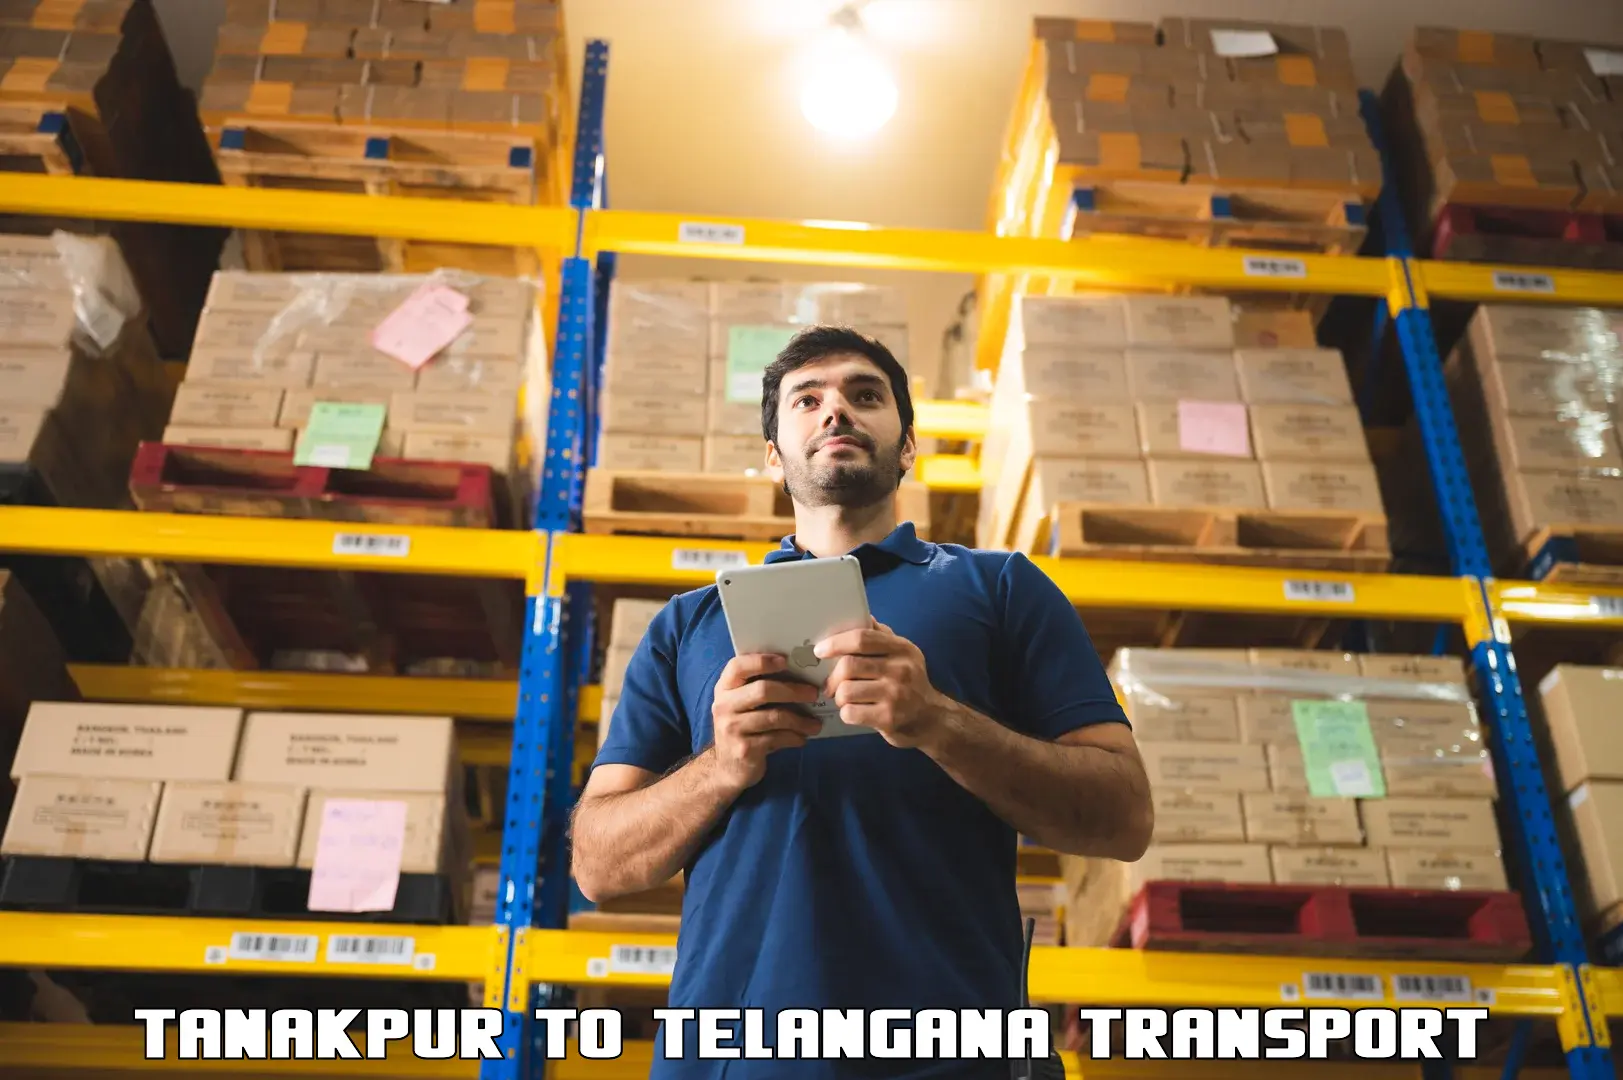 Nearest transport service Tanakpur to Dubbak